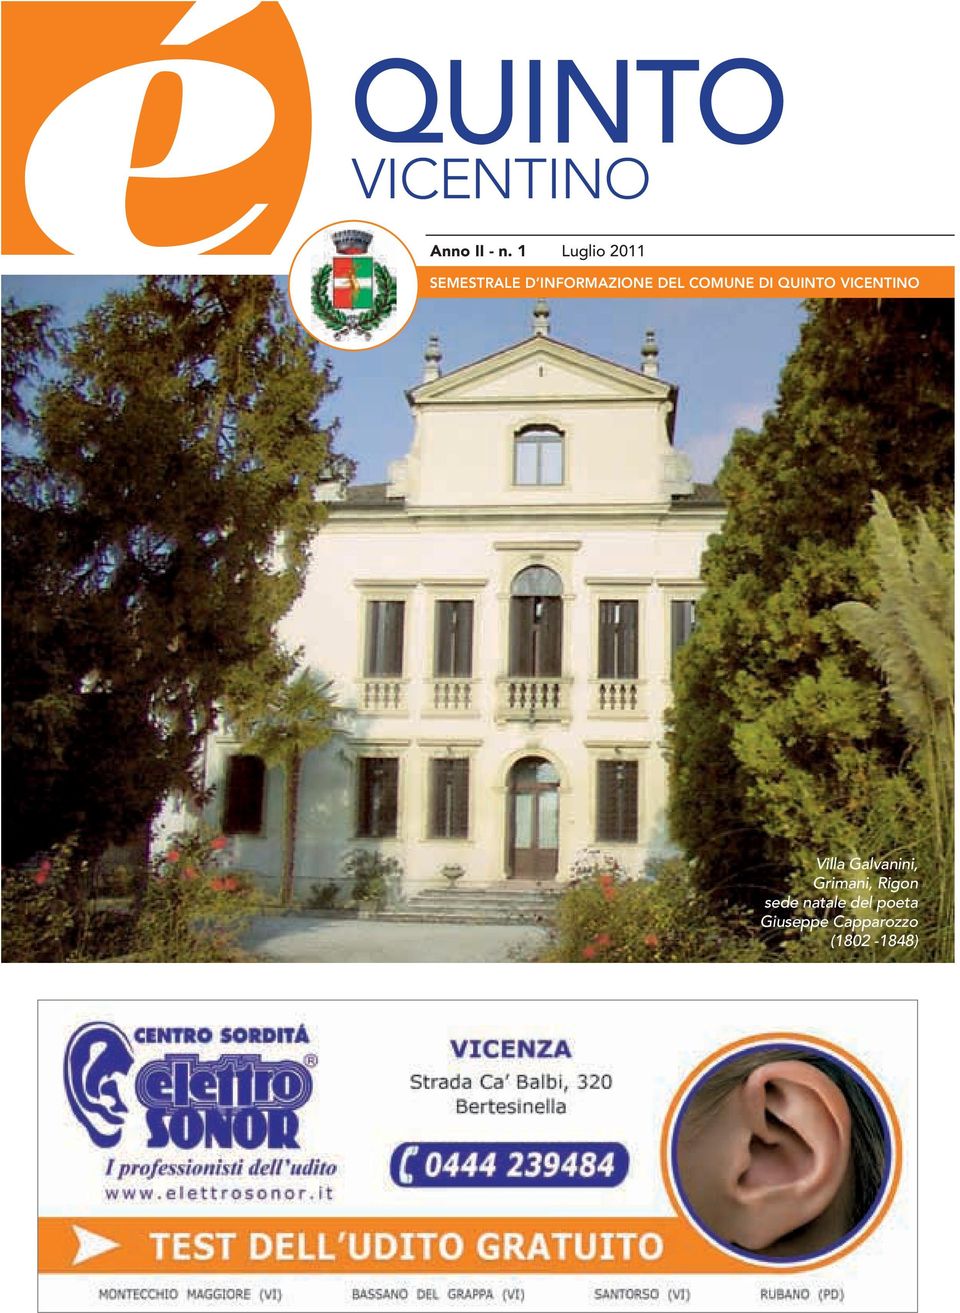 COMUNE DI QUINTO VICENTINO Villa Galvanini,